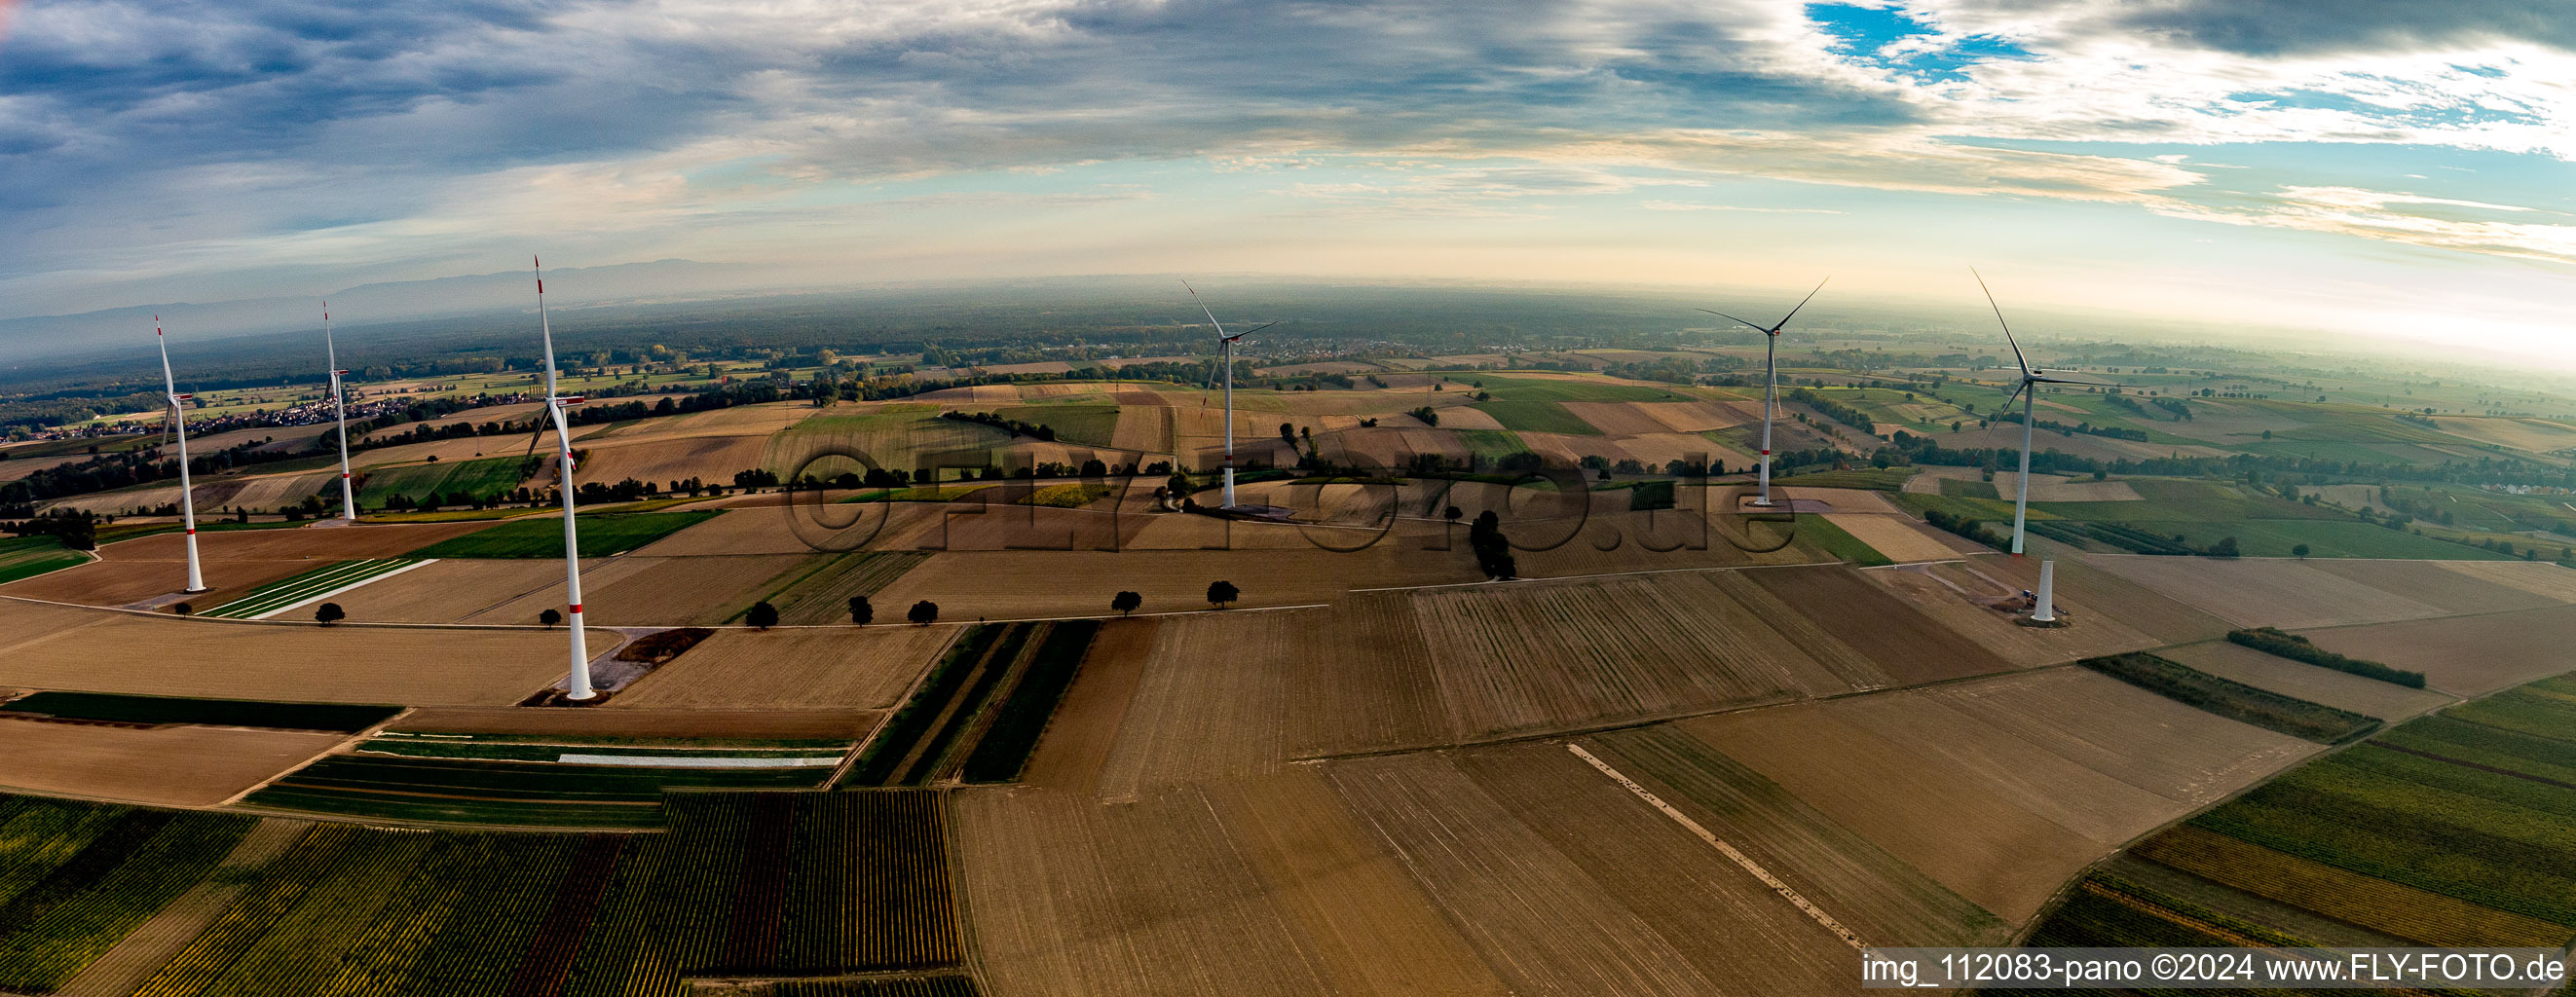 Vue aérienne de Parc éolien EnBW - éolienne avec 6 éoliennes dans un champ à Freckenfeld dans le département Rhénanie-Palatinat, Allemagne